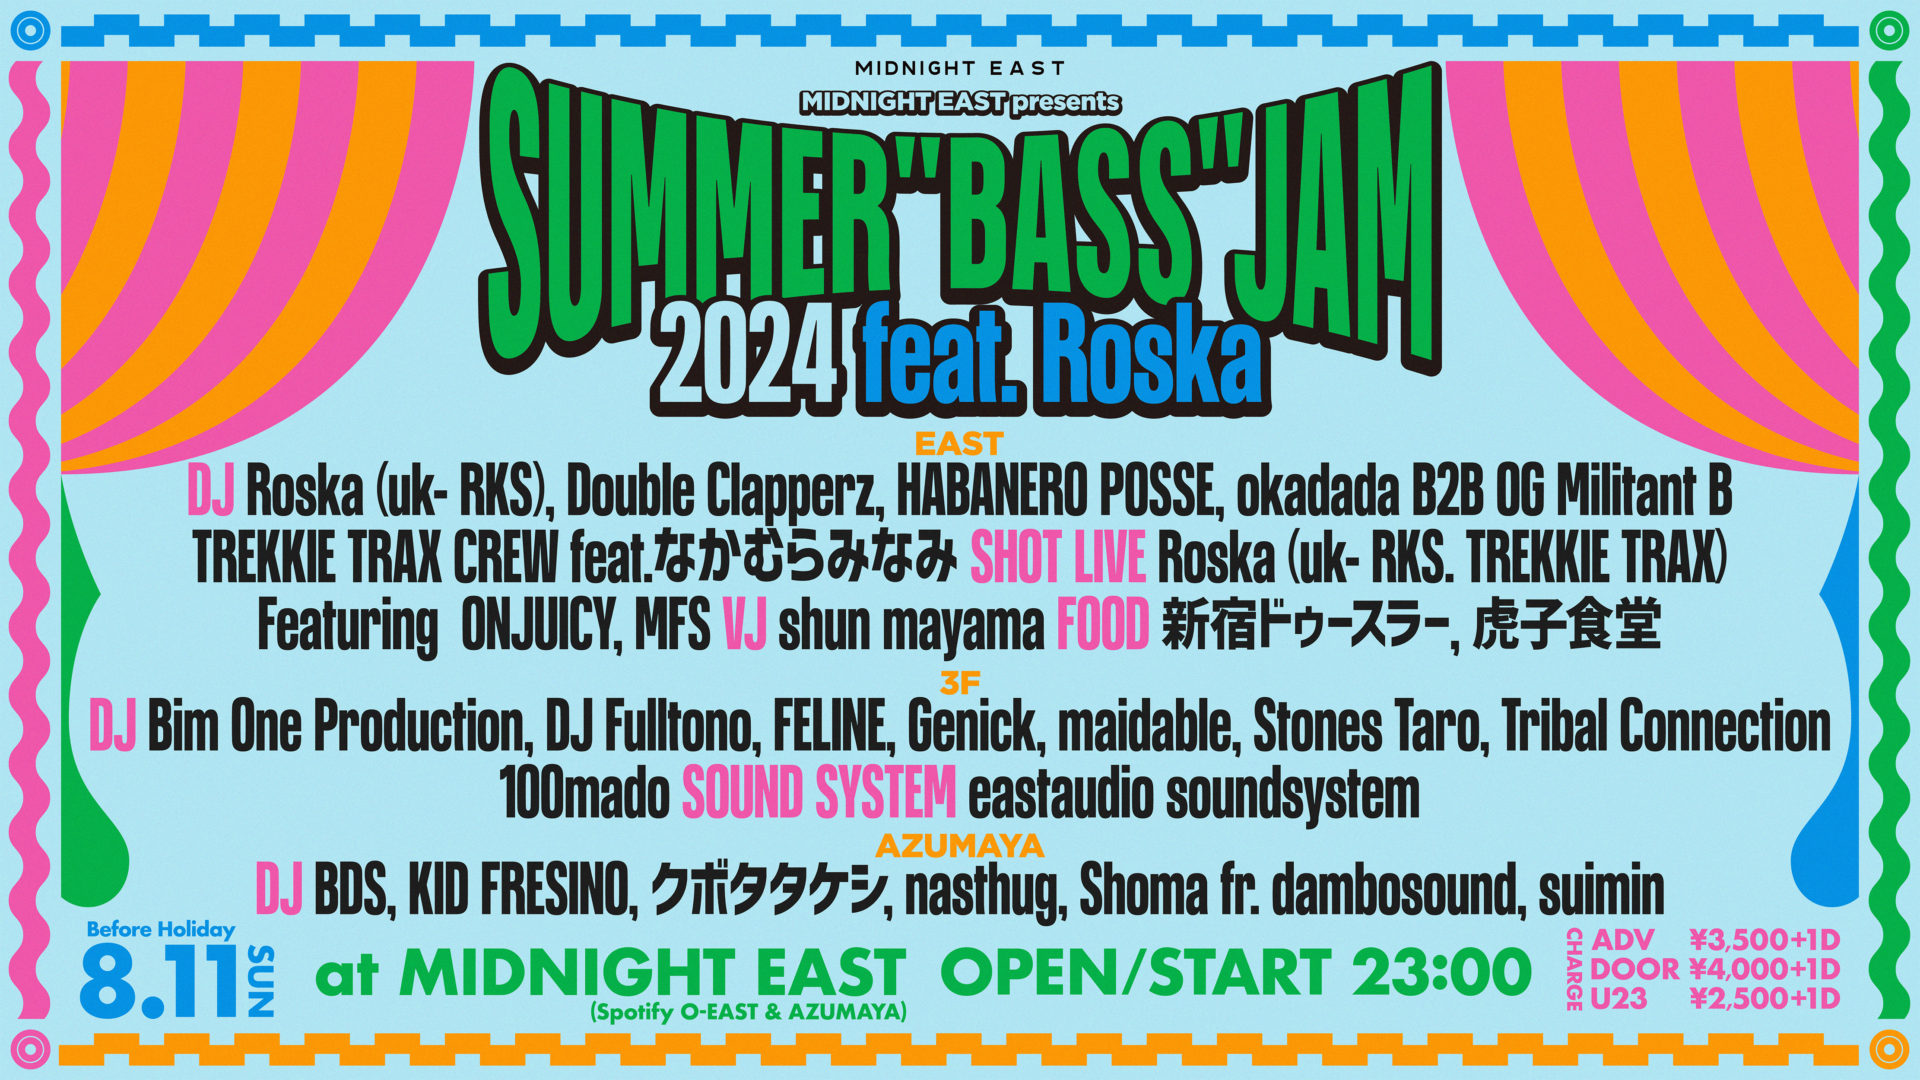 SUMMER “BASS” JAM 2024 feat. Roska